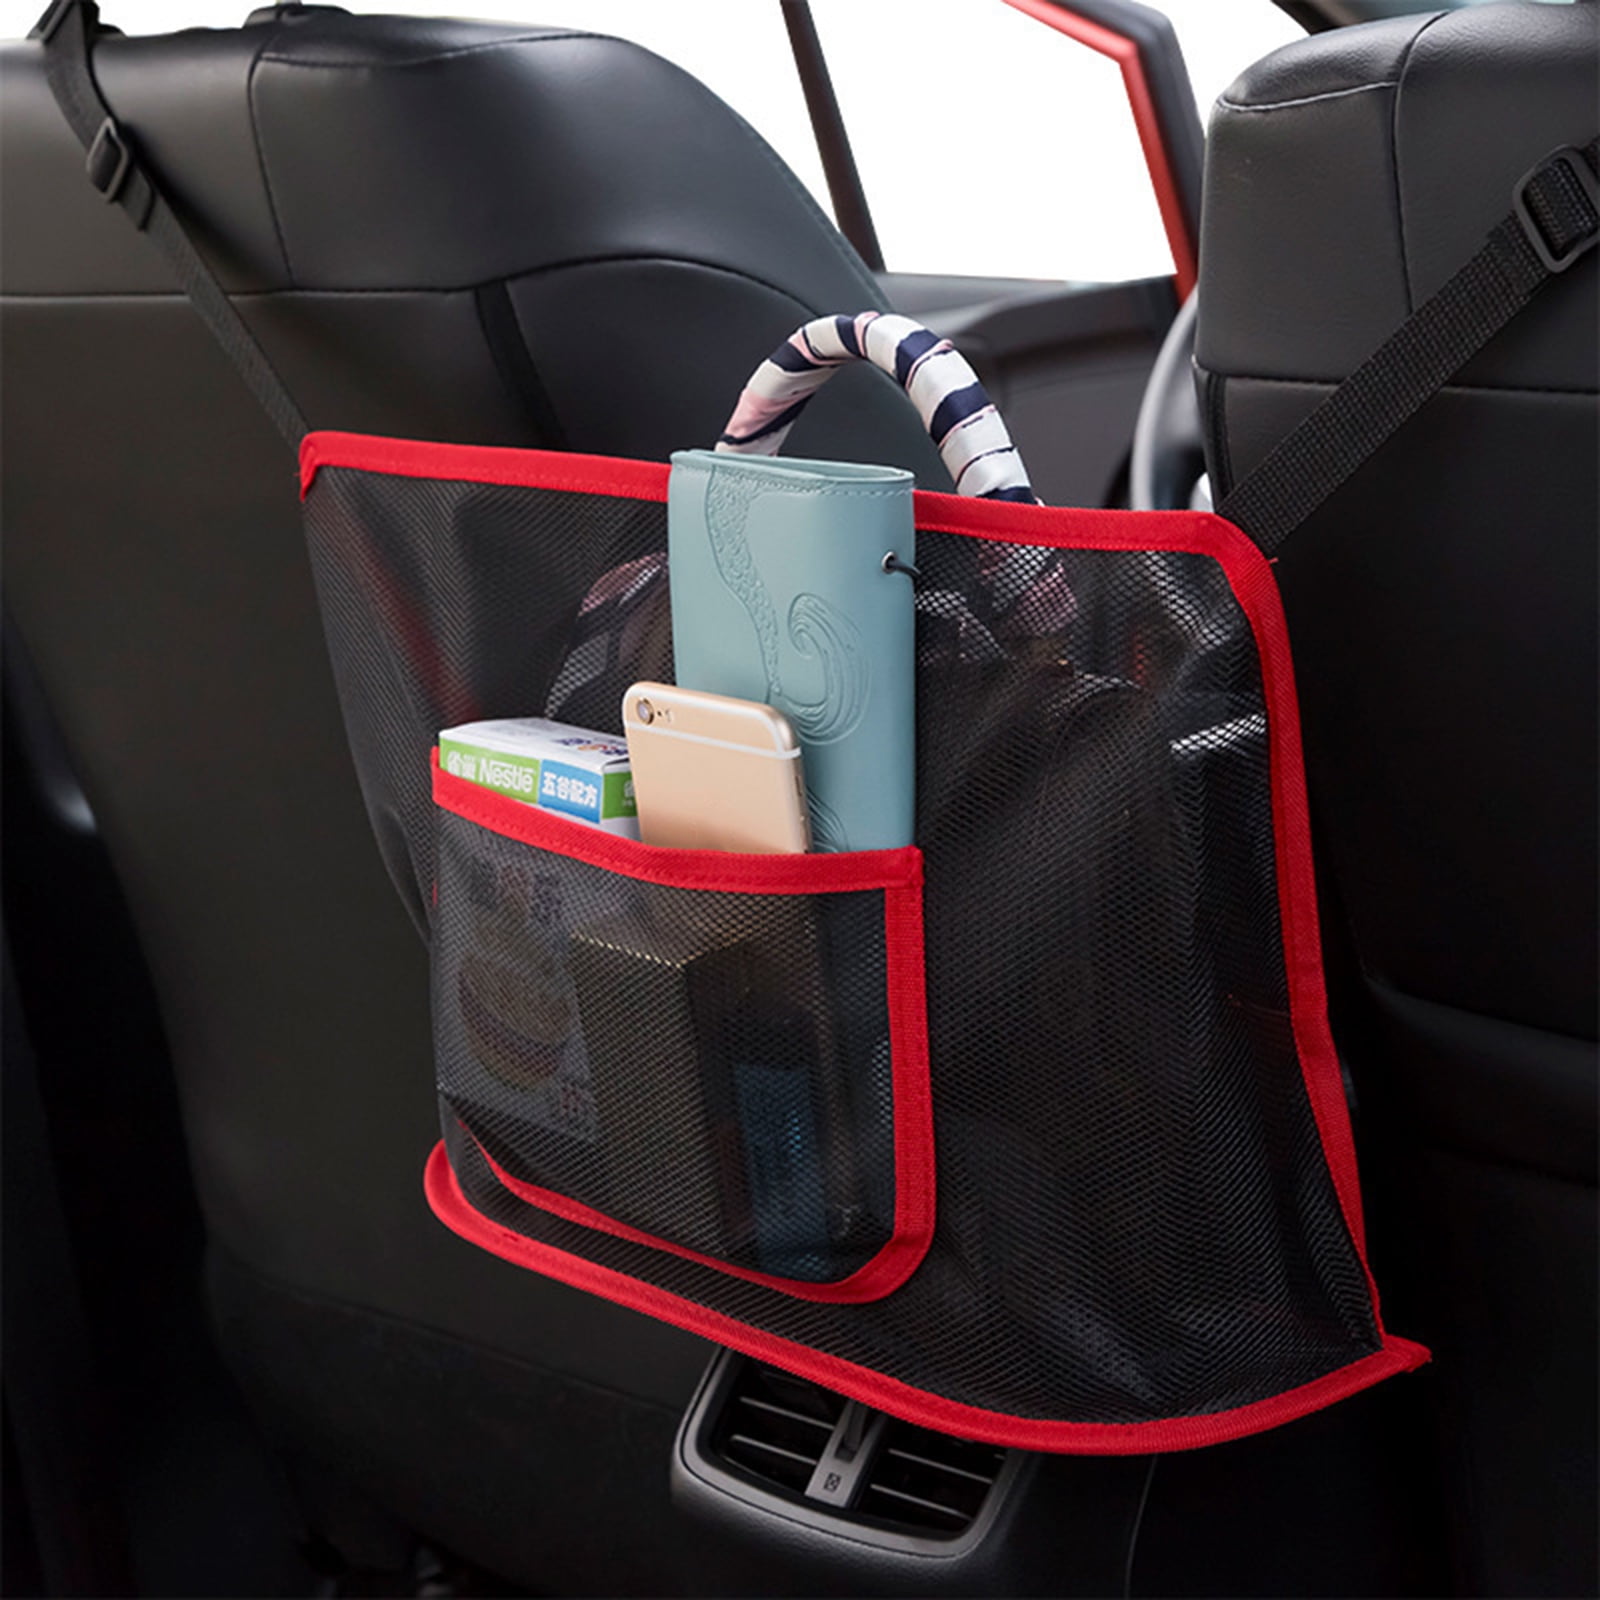 Car Cache Helps as Dog Barrier Too（Black） Car Purse Storage & Pocket Holder Car Net Pocket Handbag Holder Seat Back Net Bag Pocketbook Holder Hammock 3-Layer Car Mesh Organizer Handbag Holder 